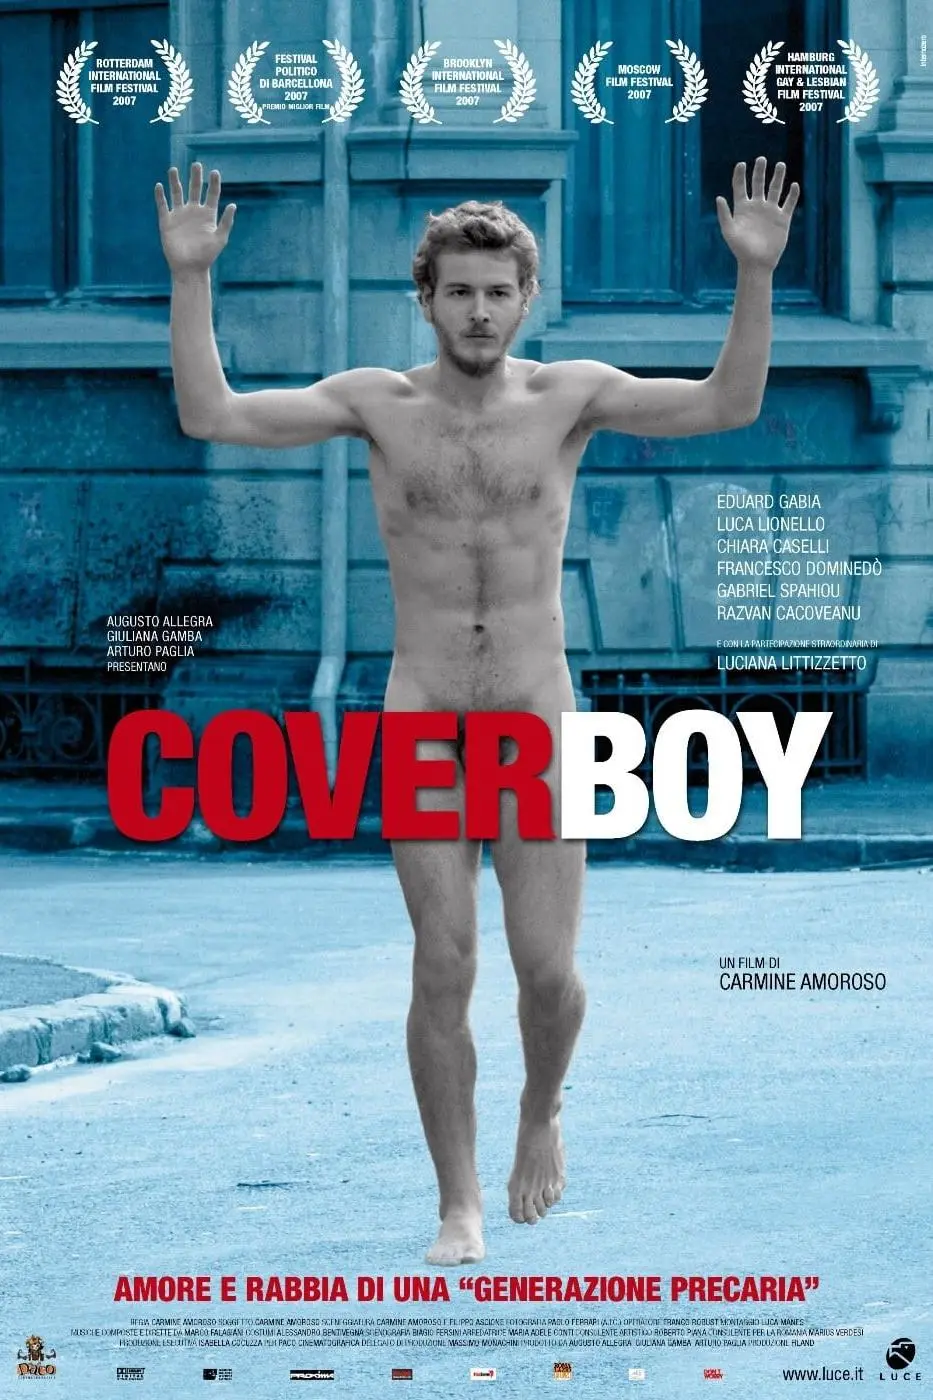 Cover Boy: La última revolución_peliplat